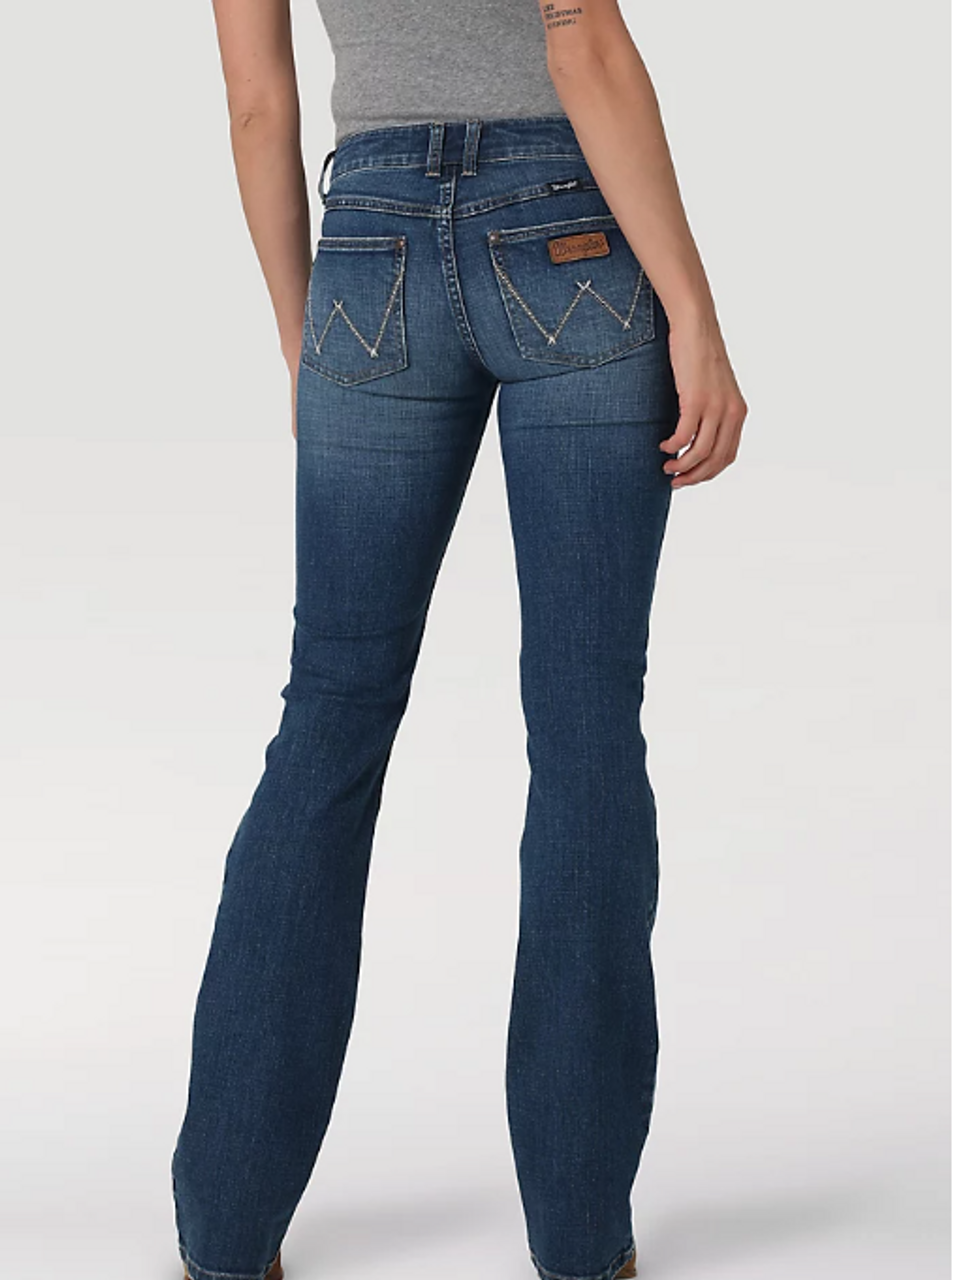 Wrangler Cash Women's Jeans, Little Bit Western